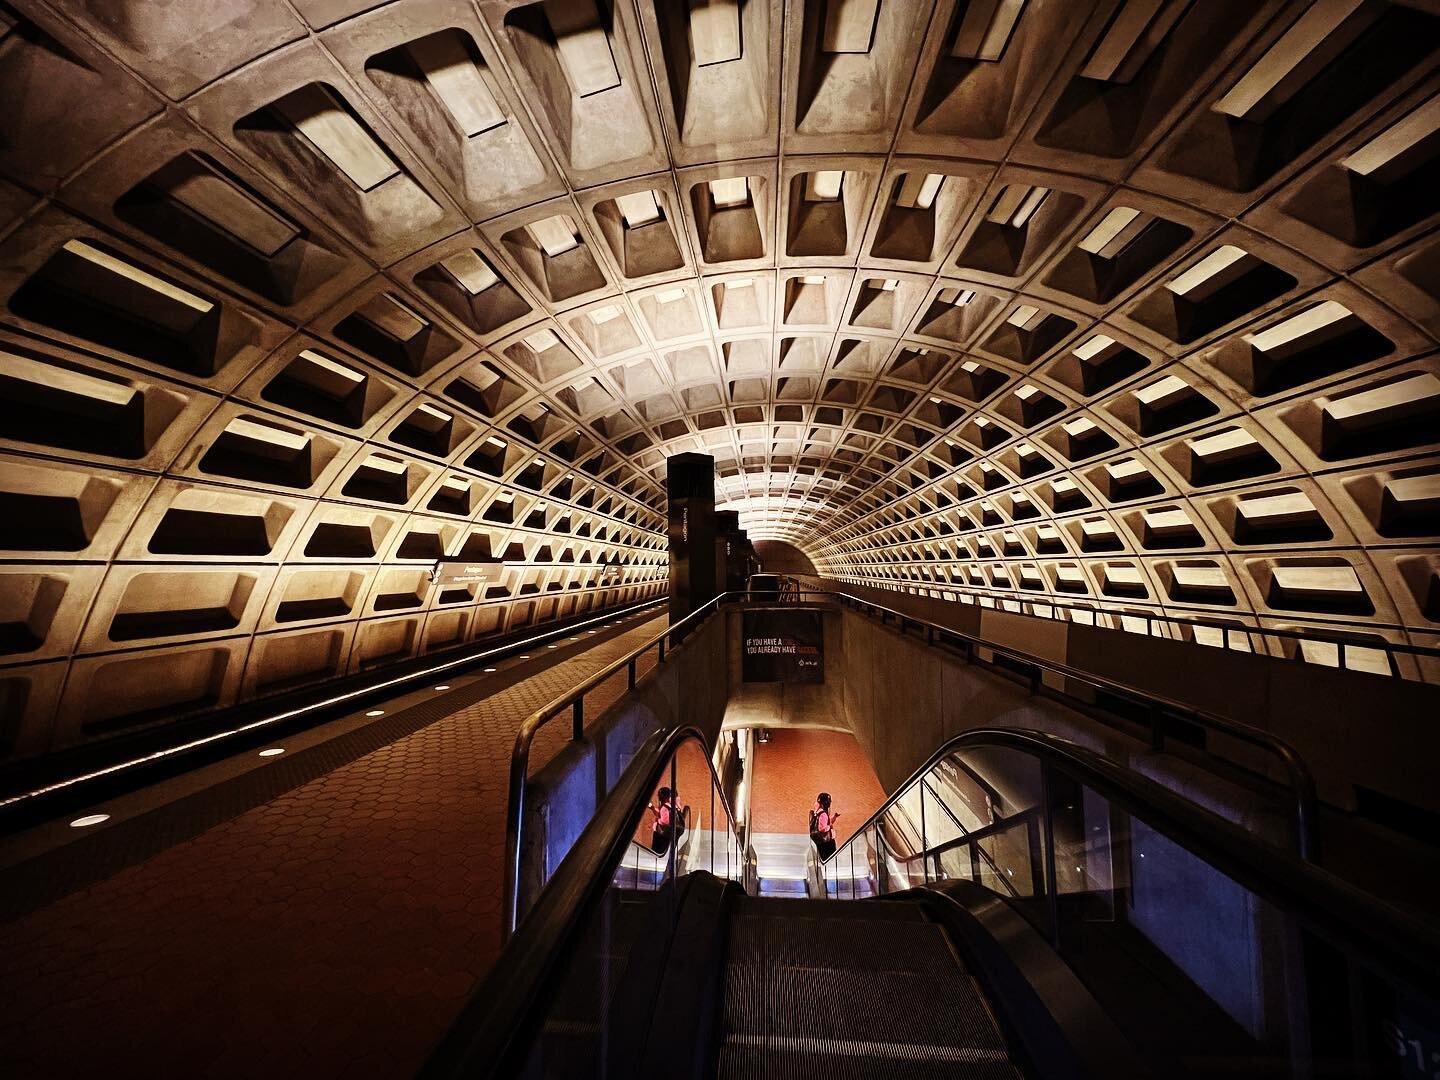 #washingtondc #metro by Chicago architect Harry Weese #harryweese